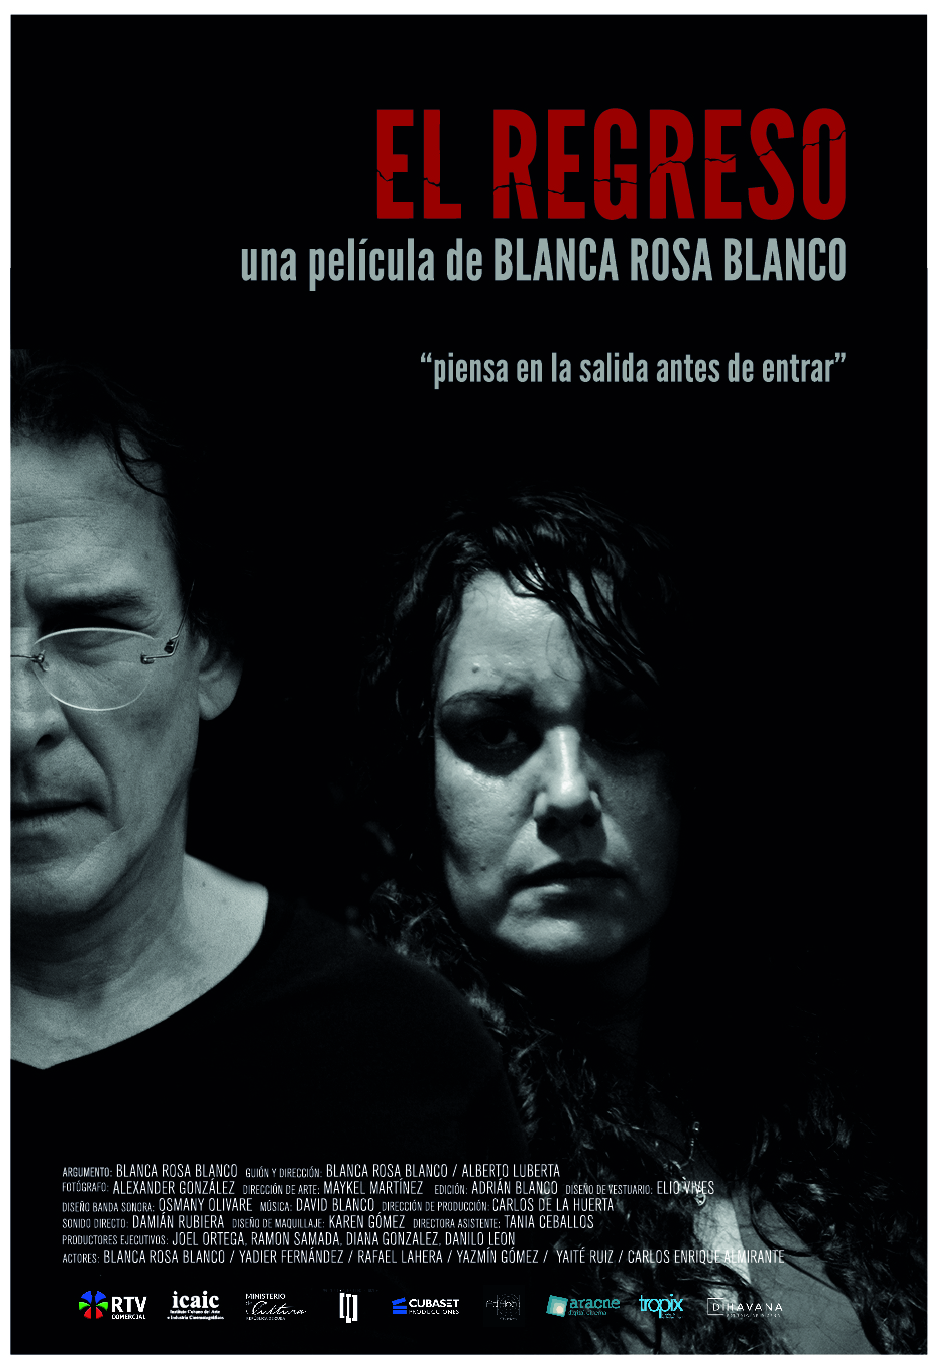 El Regreso, una película de Blanca Rosa Blanco en el Festival de Cine de La Habana